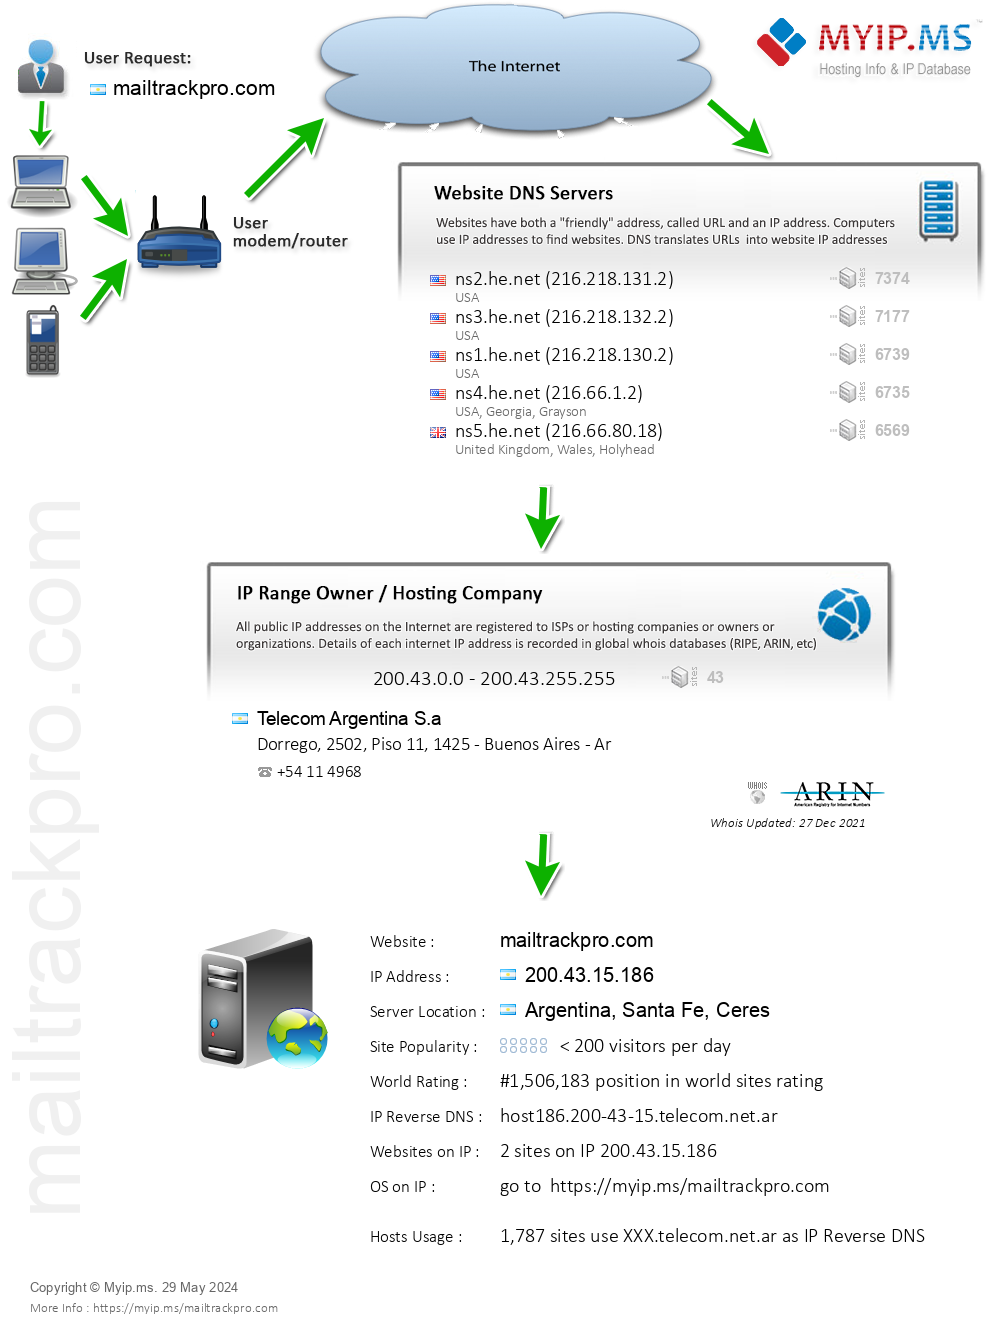 Mailtrackpro.com - Website Hosting Visual IP Diagram